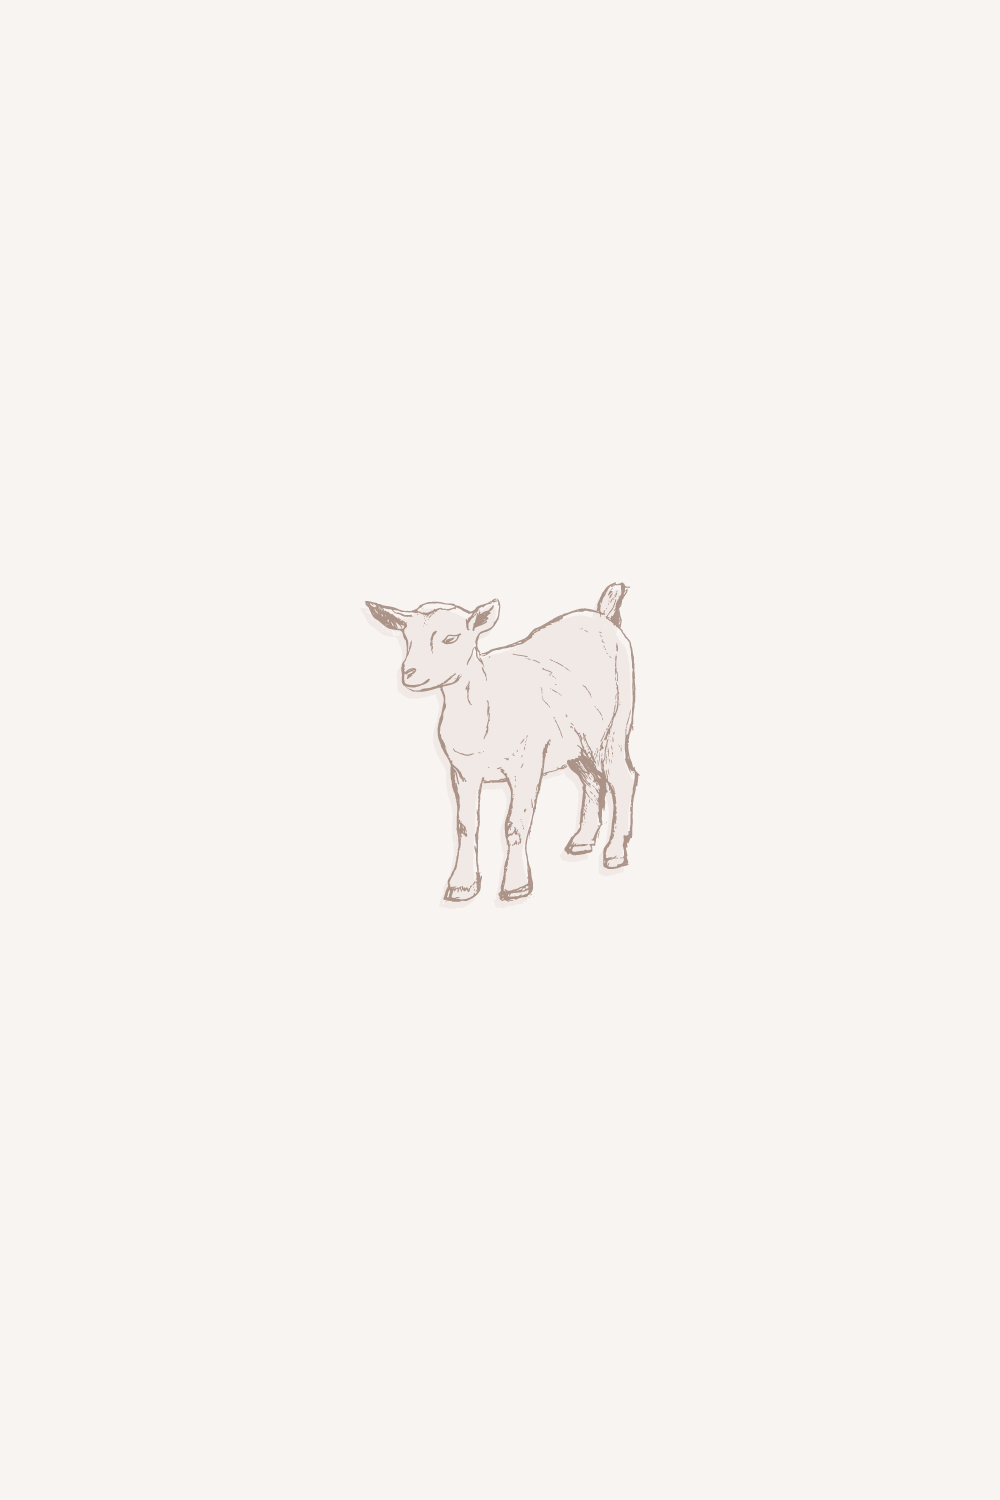 Goat Illustration nigerian dwarf goat 805 farms alberta